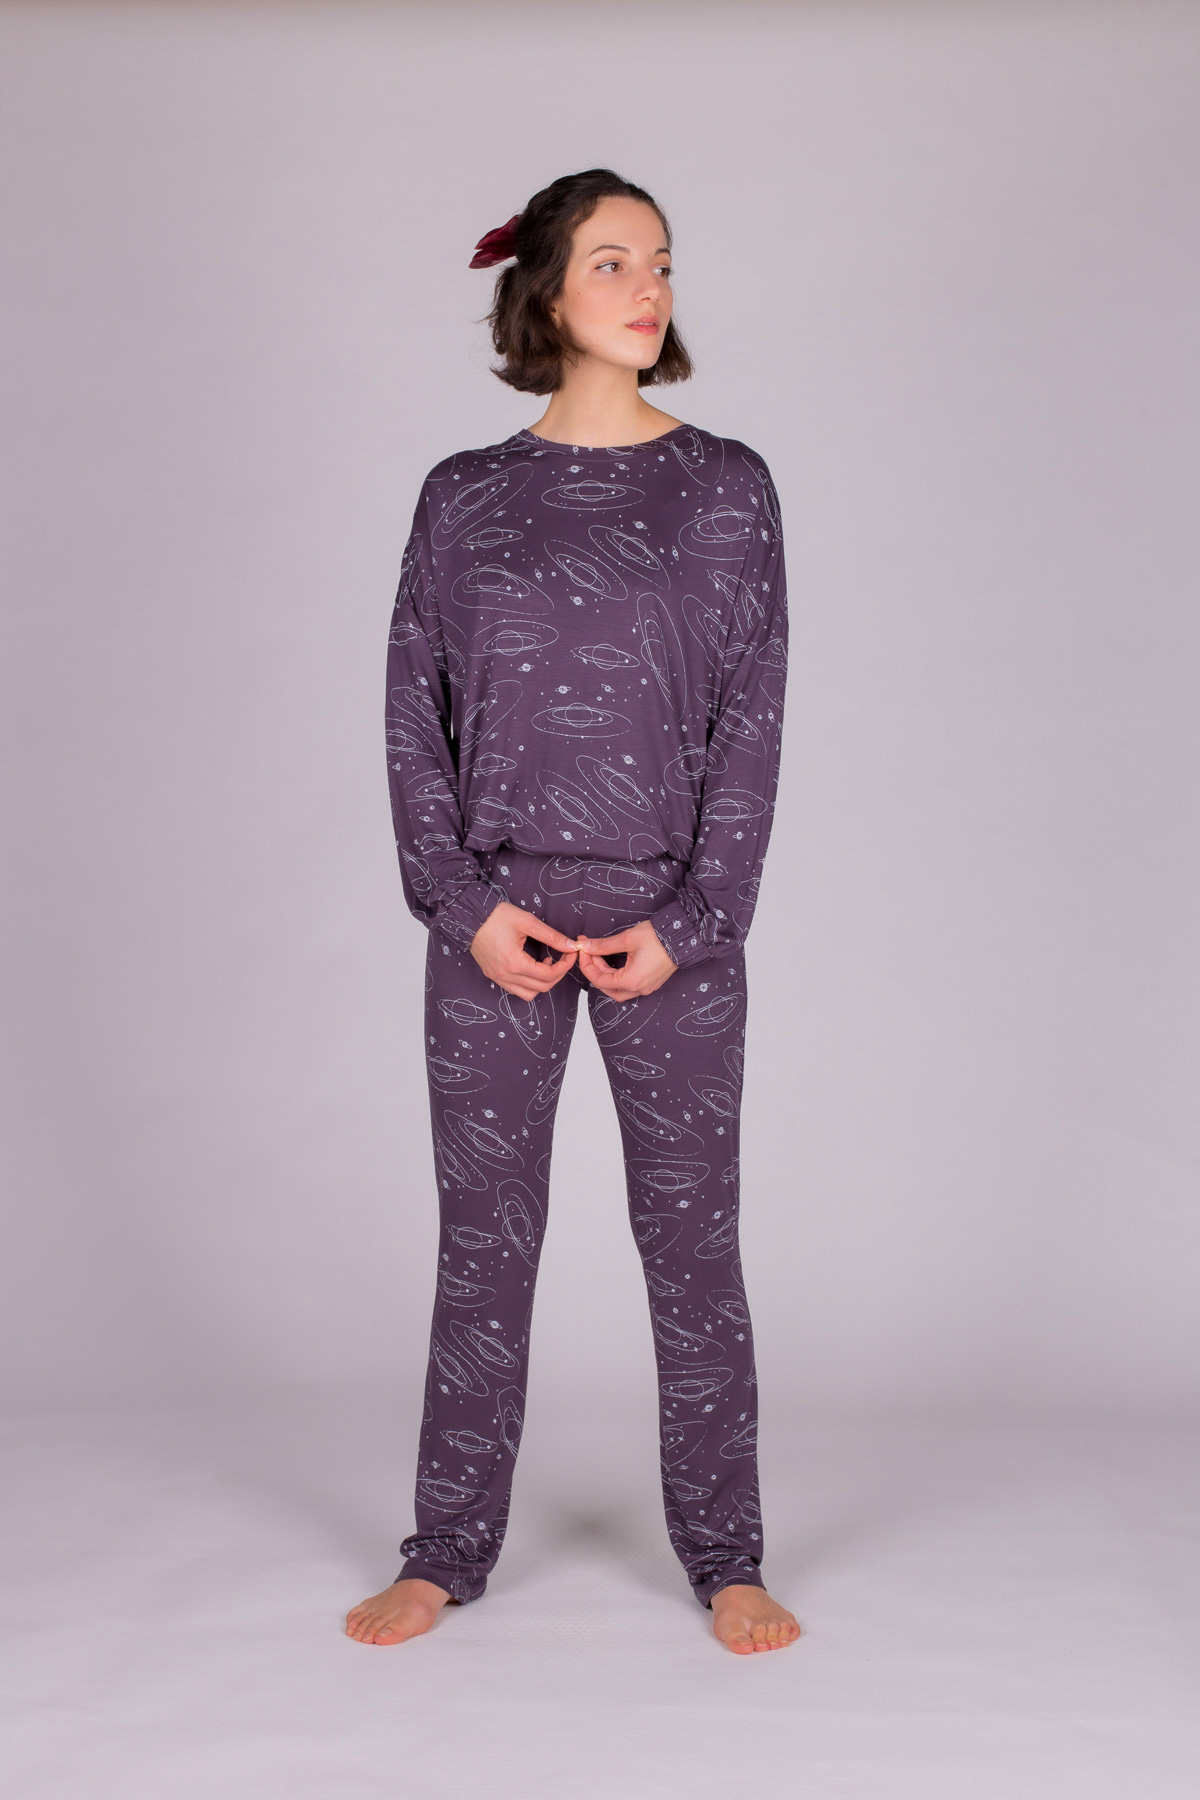 Kadın Galaksi Desenli Pijama Takımı